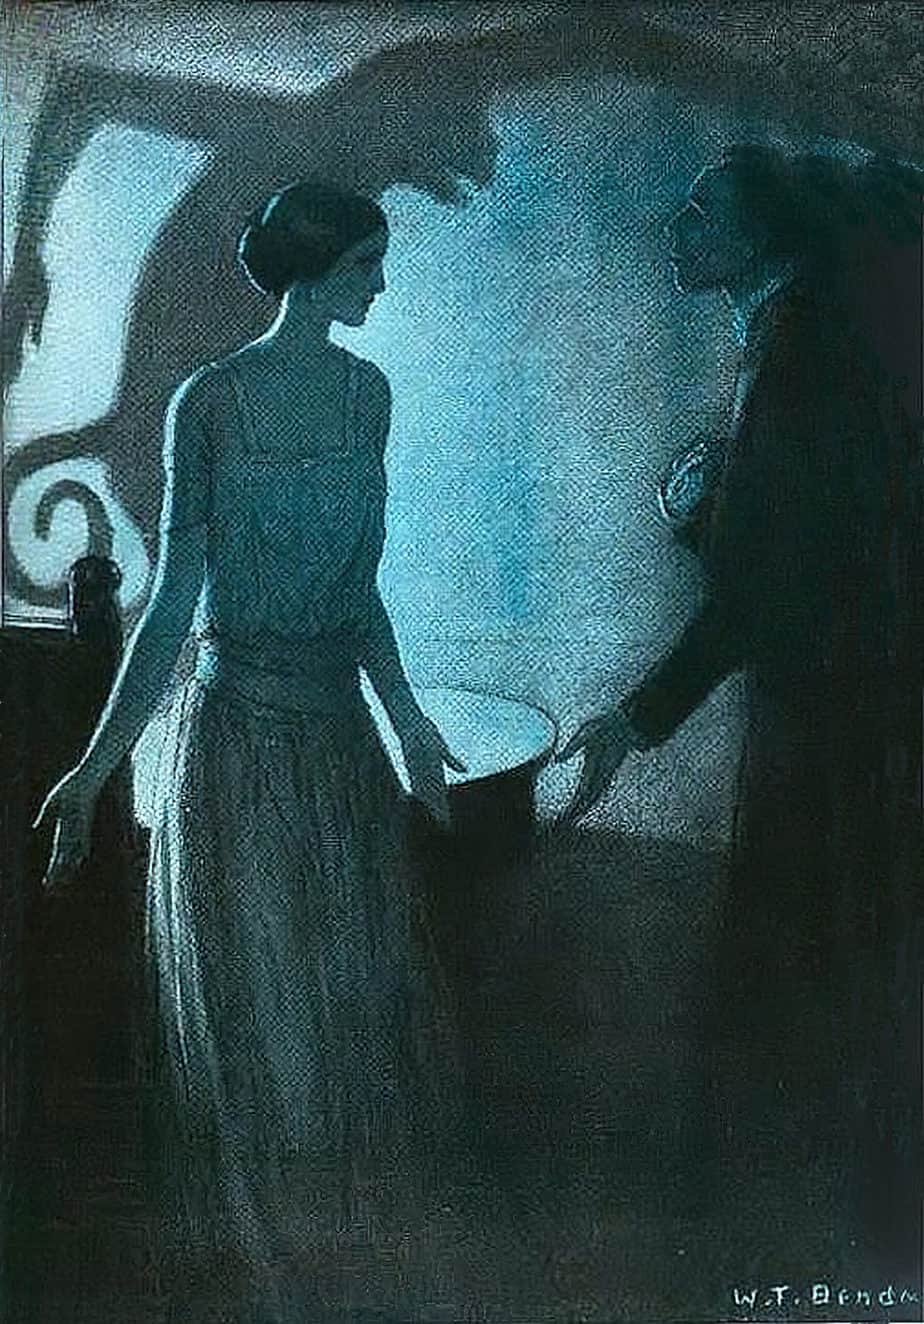 Pale Woman (1922) by W.T Benda (Polish-American, 1873-1948)